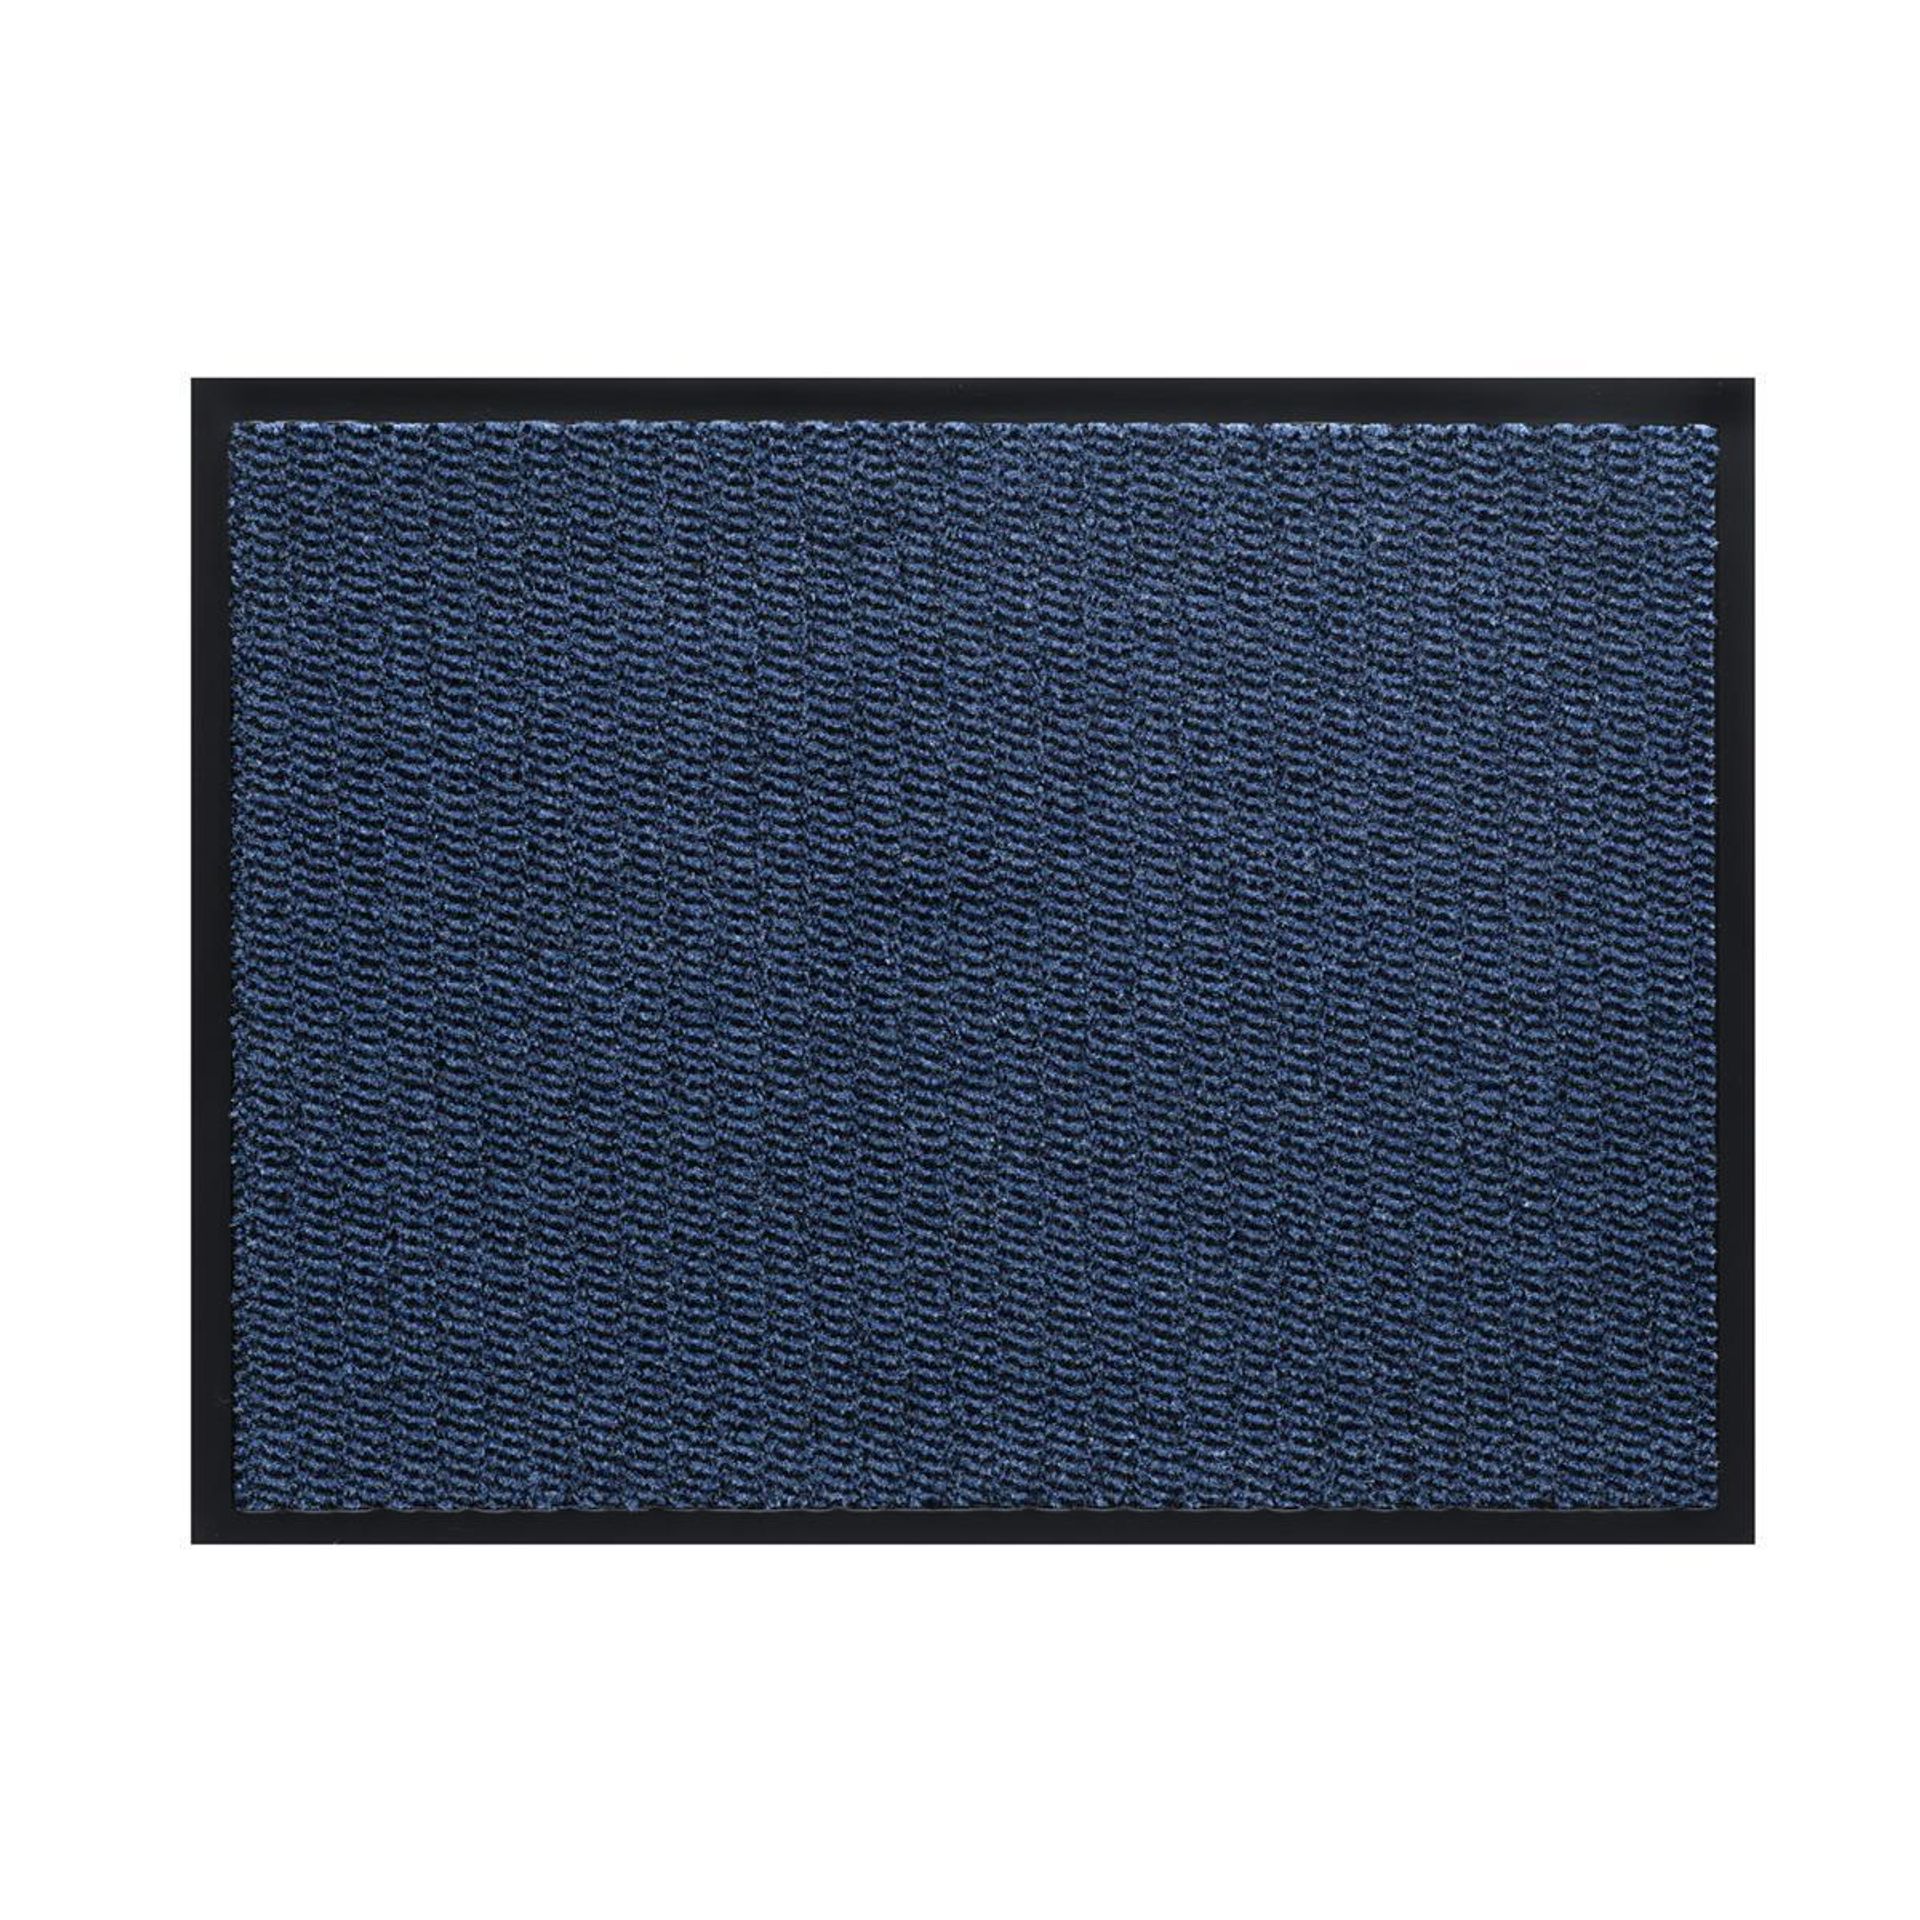 Sauberlauf Innen Spectrum 010 blue - Rollenbreite 200 cm